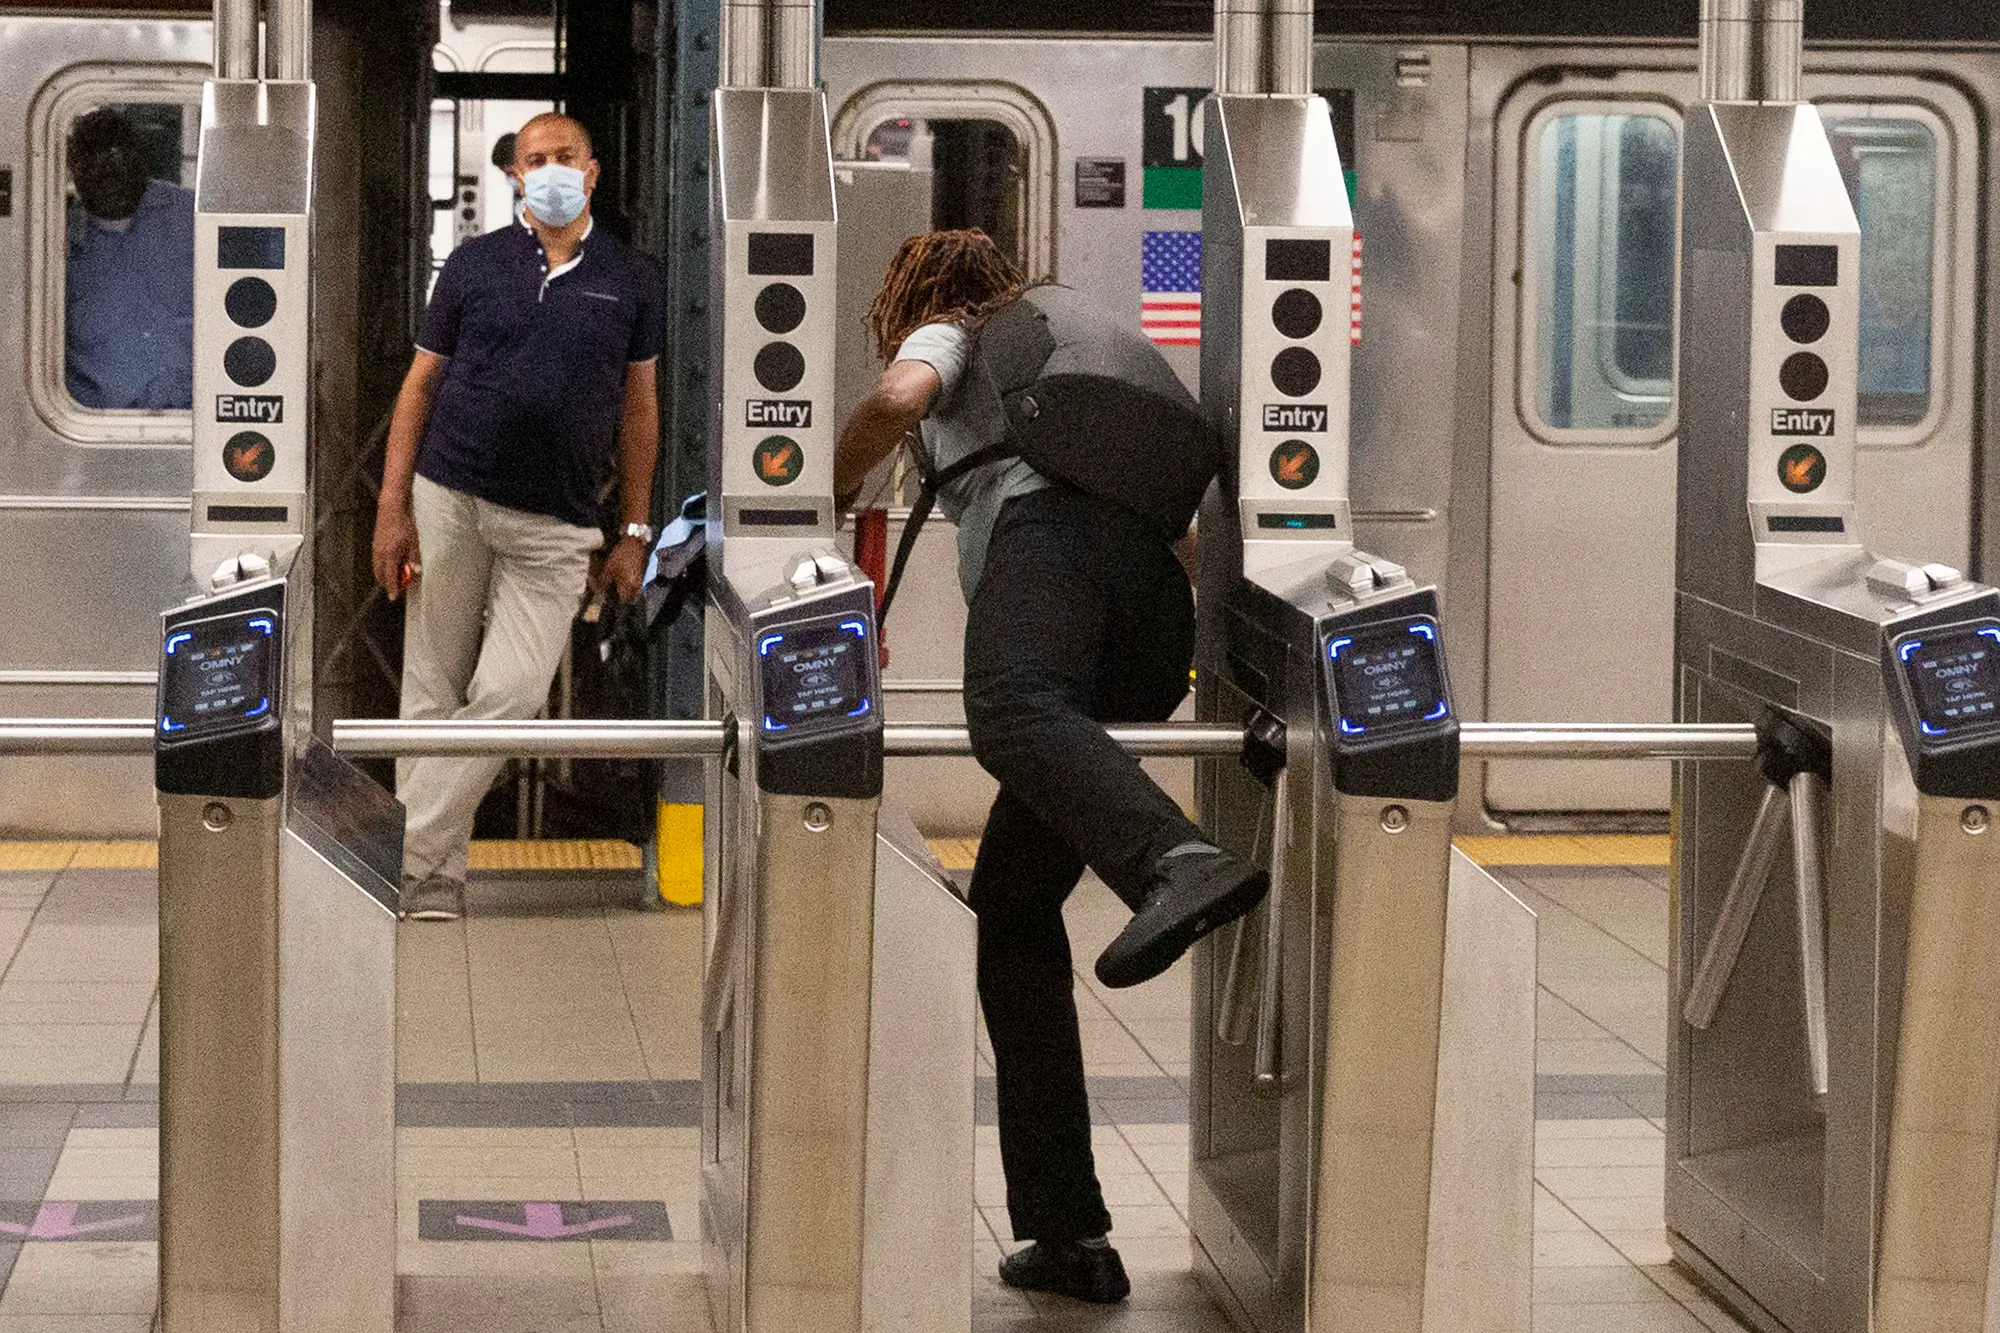 Nowojorskie metro wykorzystuje sztuczną inteligencję do śledzenia osób unikających płacenia za przejazd